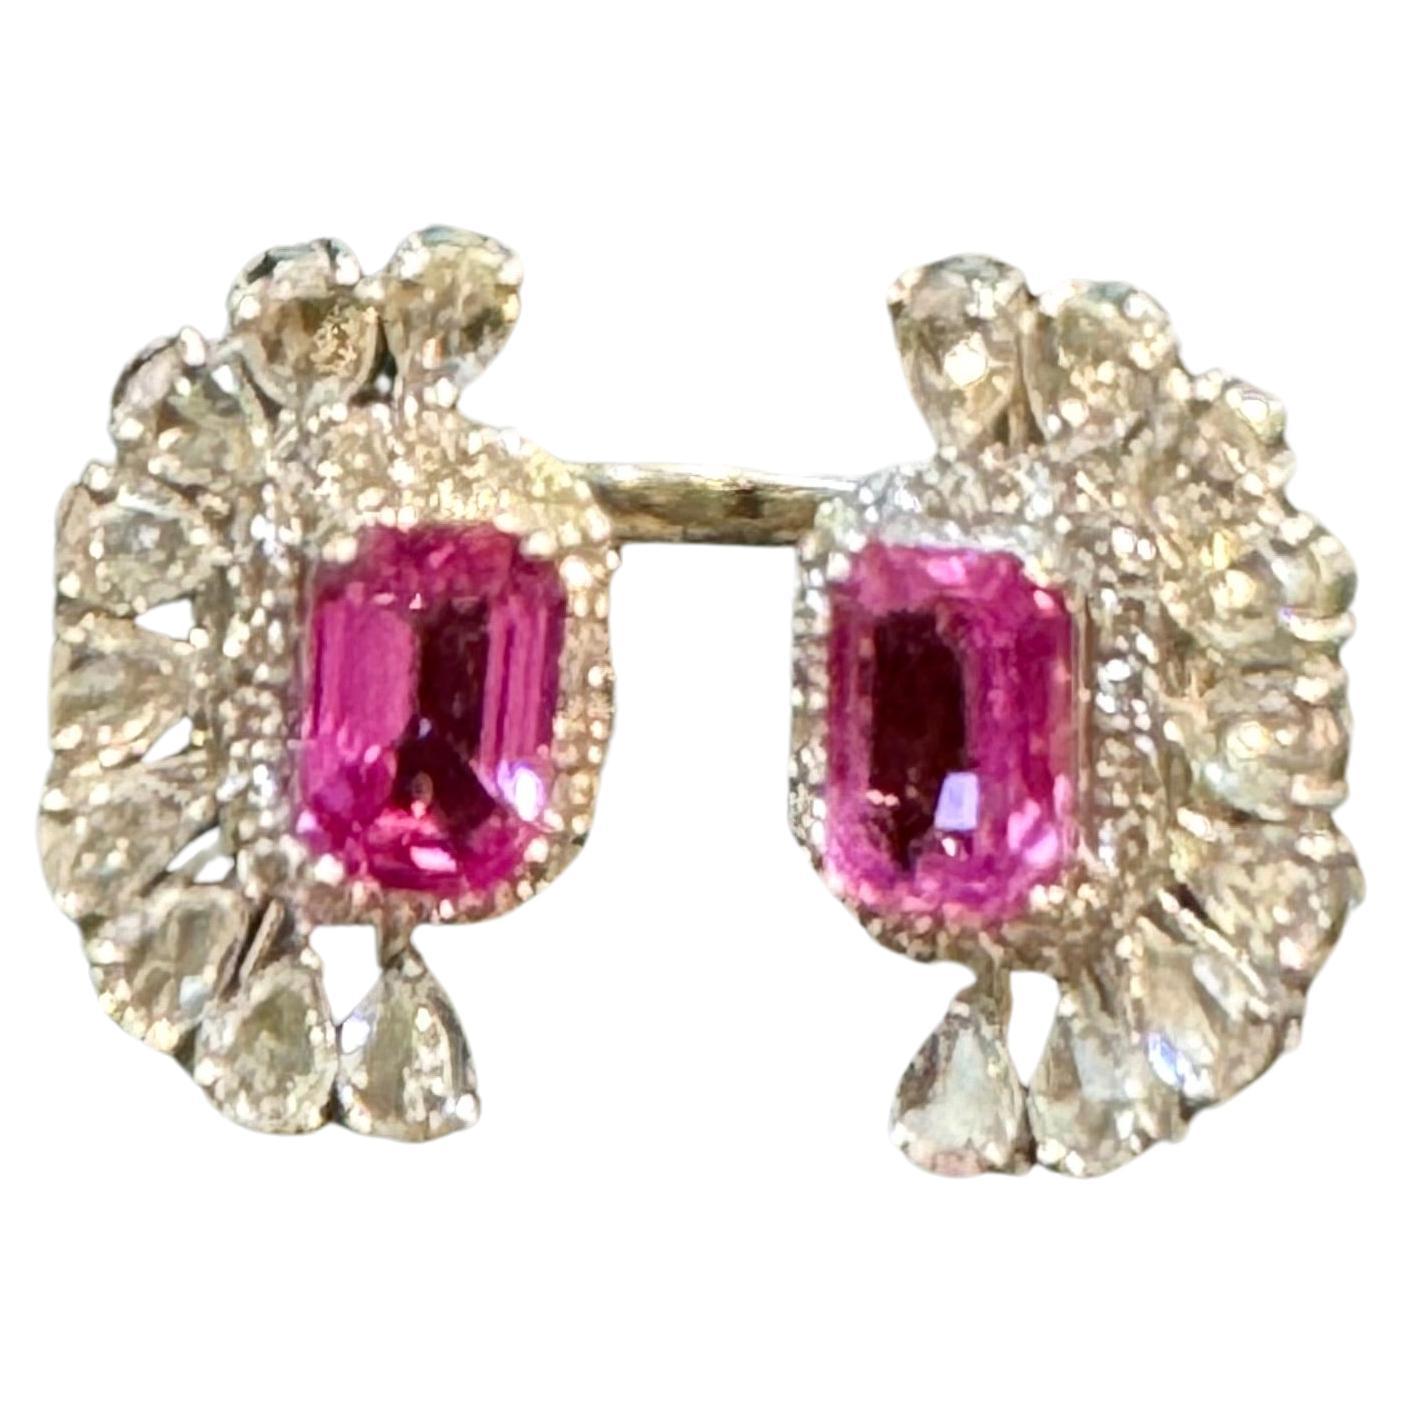 Der Ring aus 18 Karat Weißgold mit 2,5 Karat rosa Smaragdschliff und 2,8 Karat Diamanten in Größe 6 ist ein klassisches Stück mit zwei natürlichen rosa Saphiren im Smaragdschliff, die eine schöne Farbe und einen erstaunlichen Glanz mit sehr wenigen